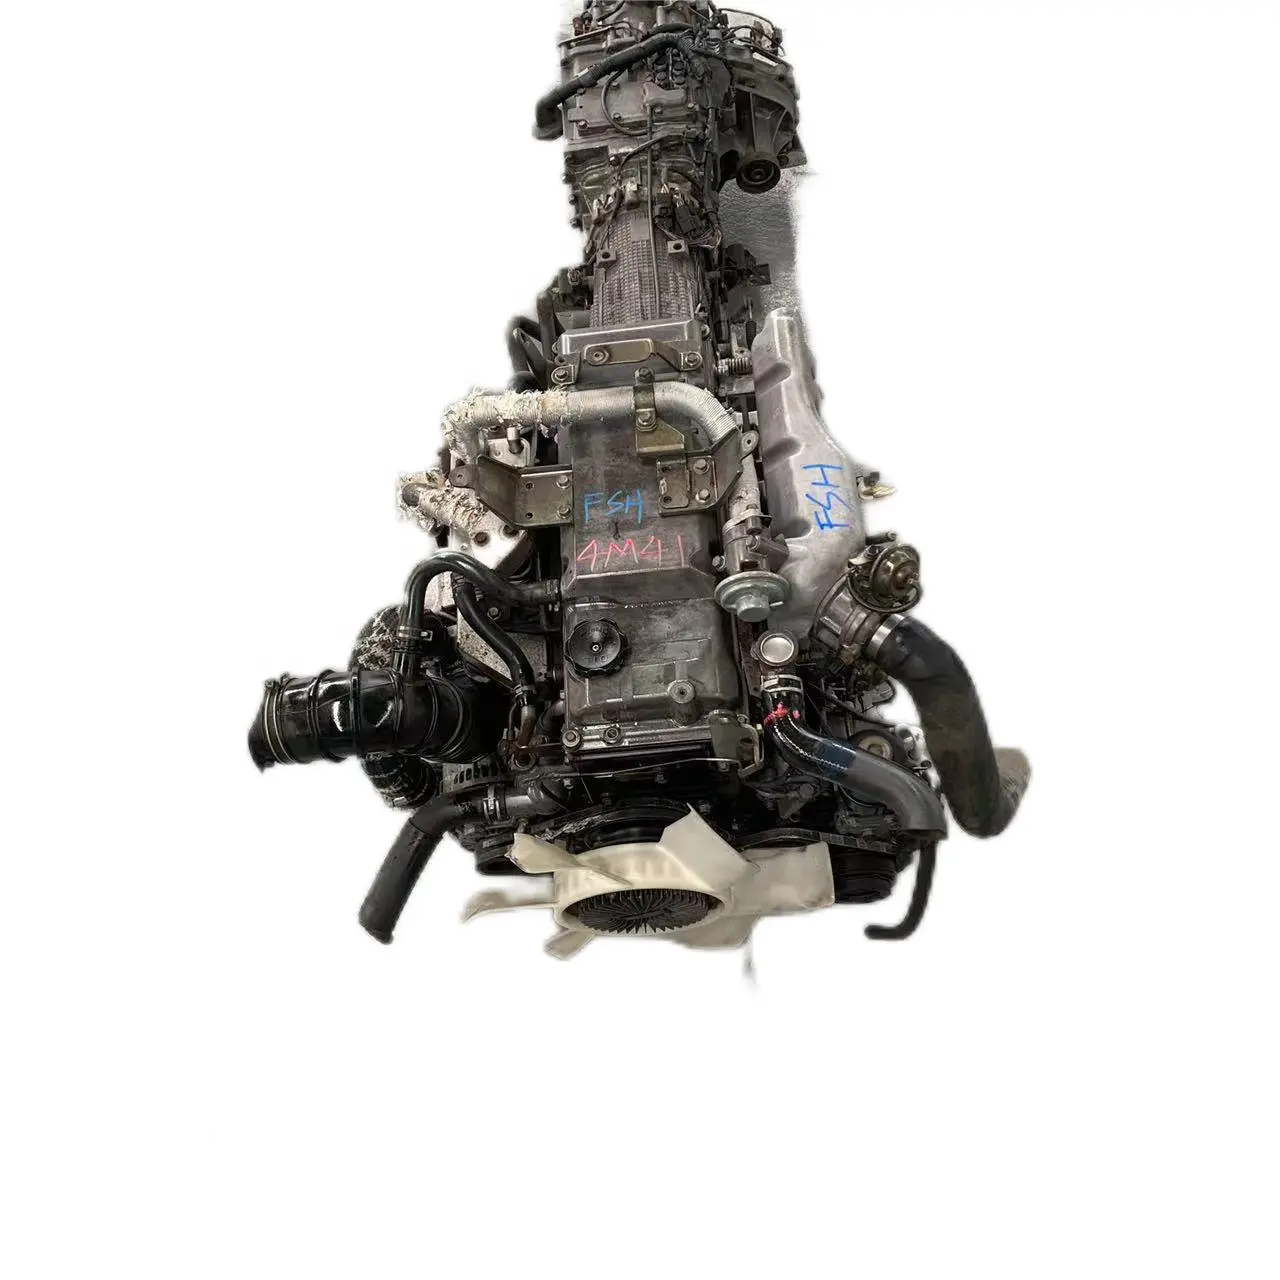 हाई एंड 41t यूरो 3 का इस्तेमाल माइटसुबिशी Suv के लिए डीजल इंजन का इस्तेमाल किया